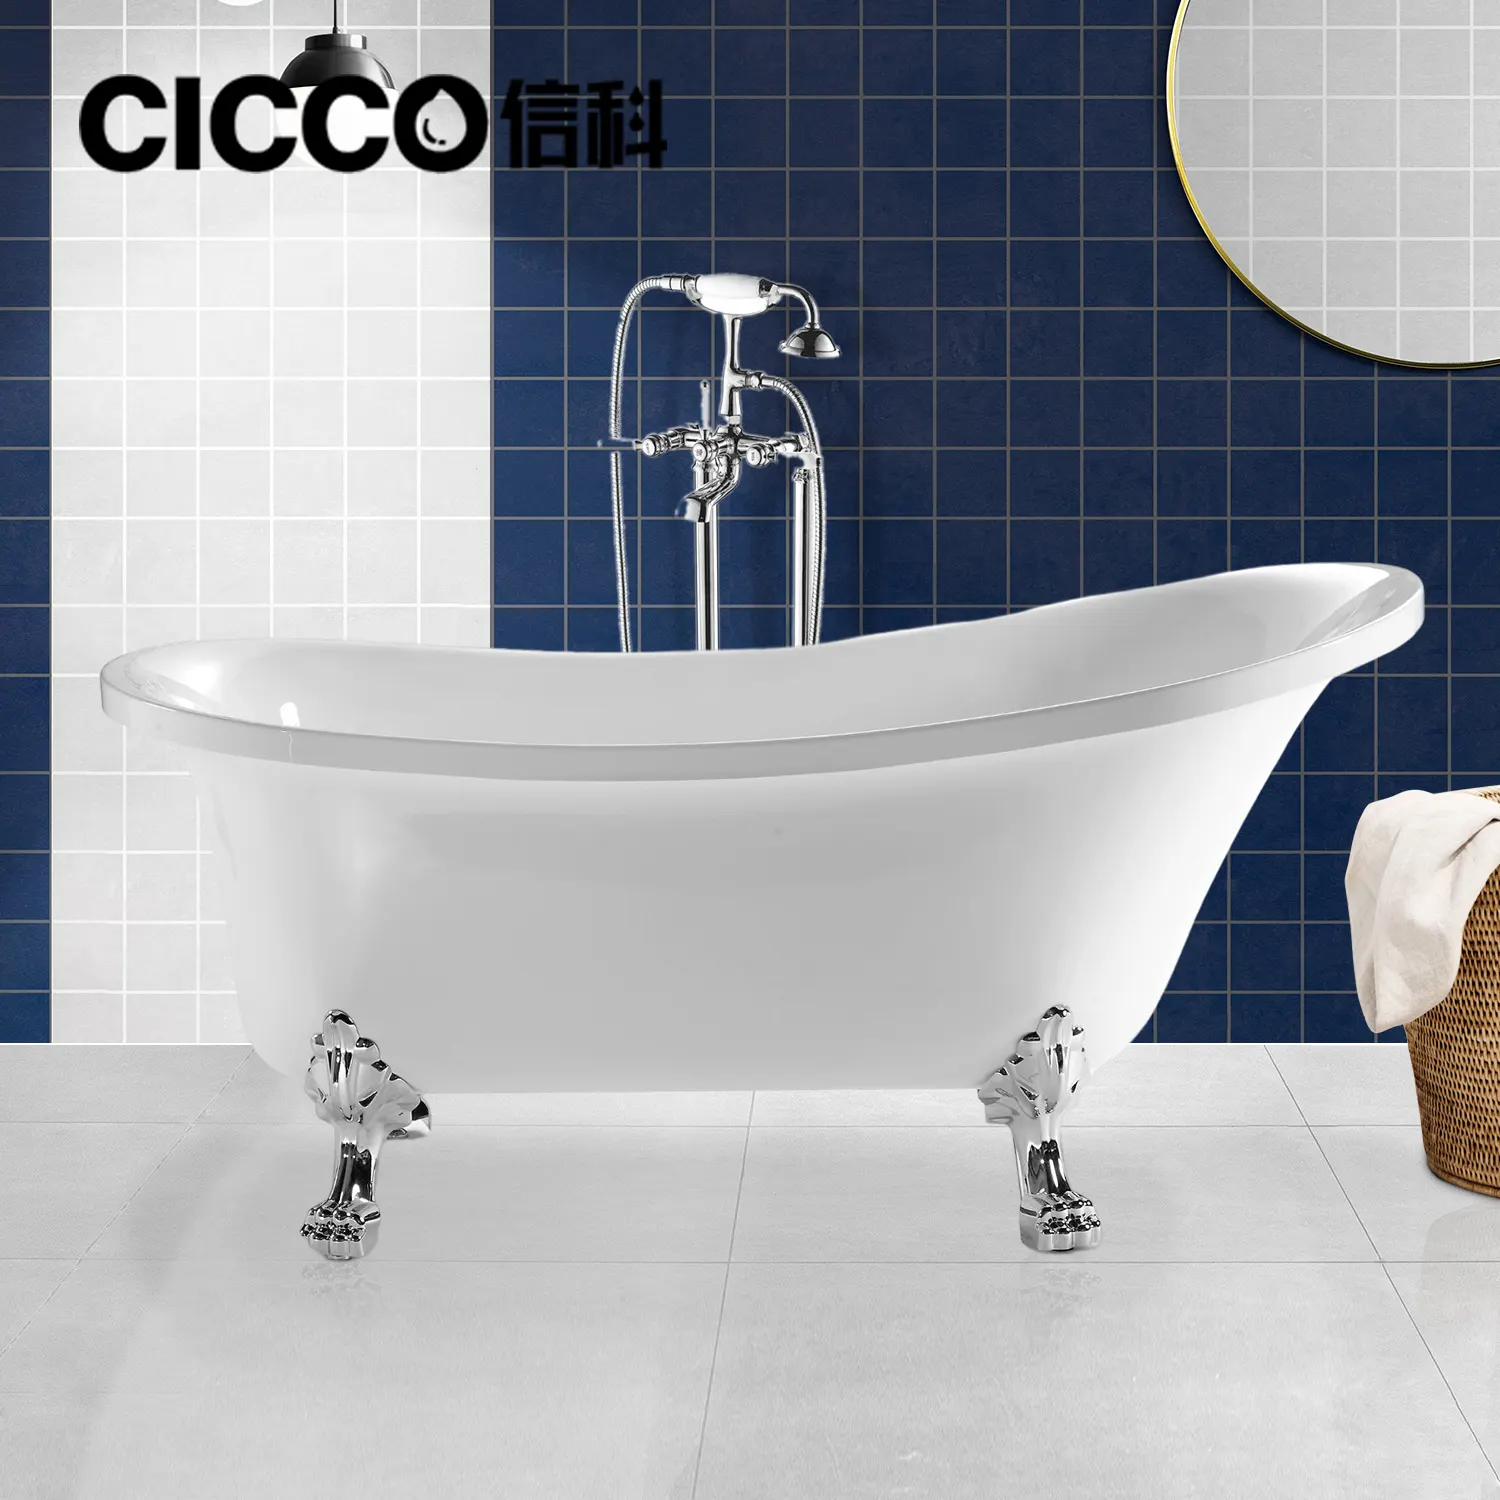 CICCO CH5221 الساخن بيع الصين الحمام الكلاسيكية رخيصة الأحمر الاكريليك قدم مخلبية حوض حوض استحمام قائم بذاته مع مخلب القدم